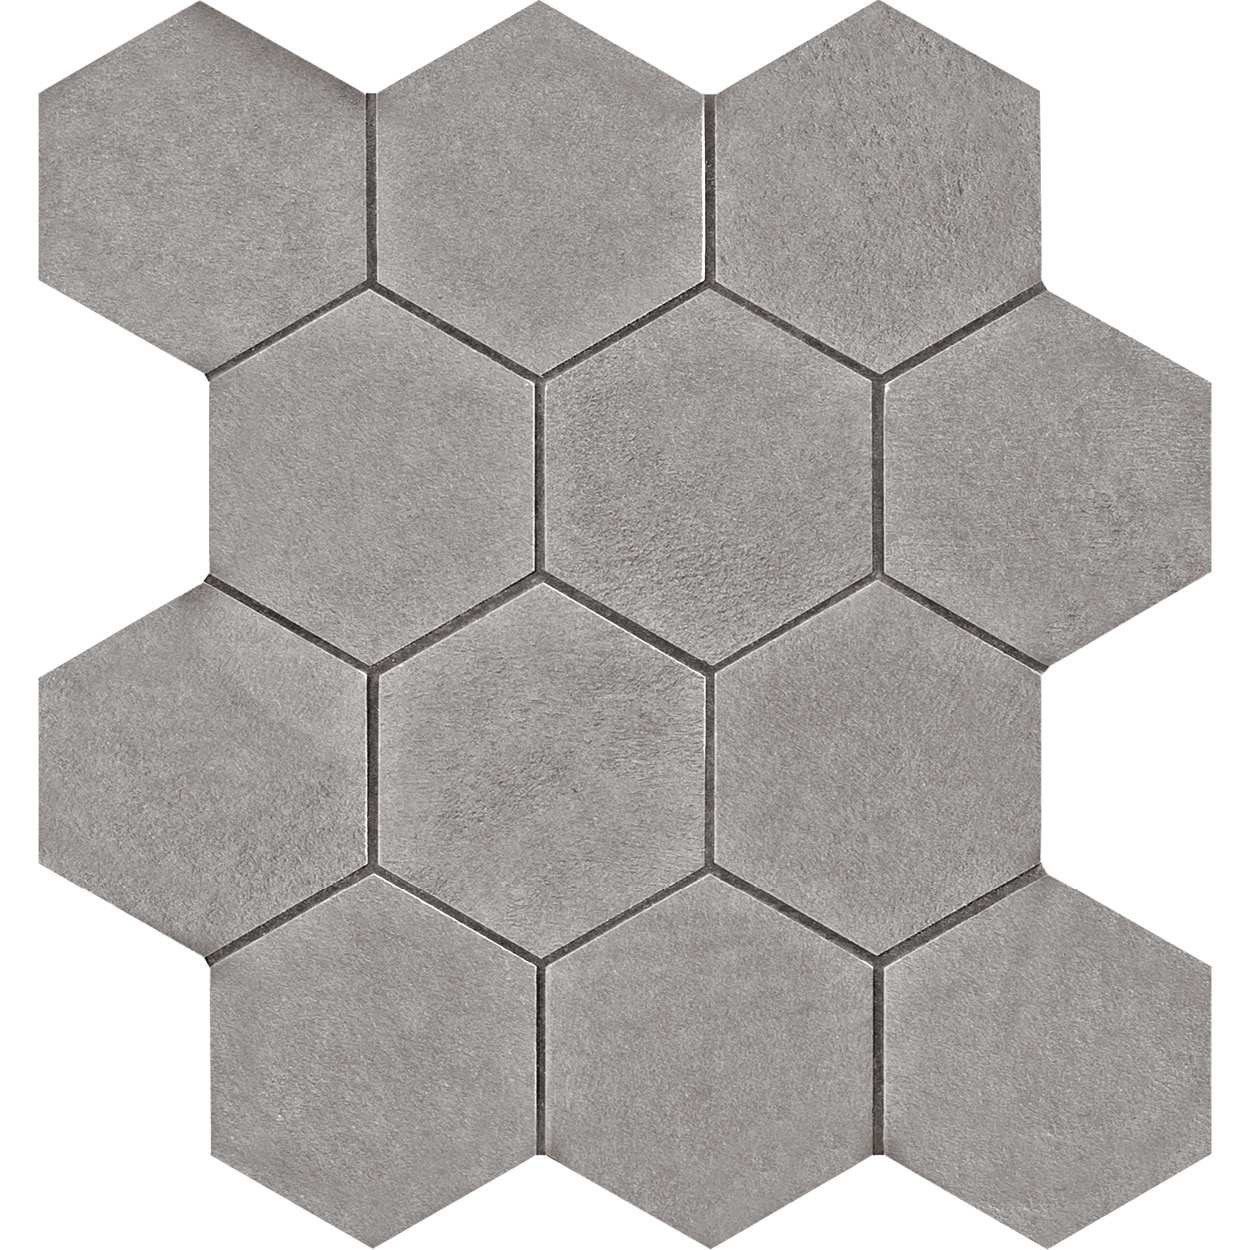 3 X 3 Seamless CL_01 hexagon